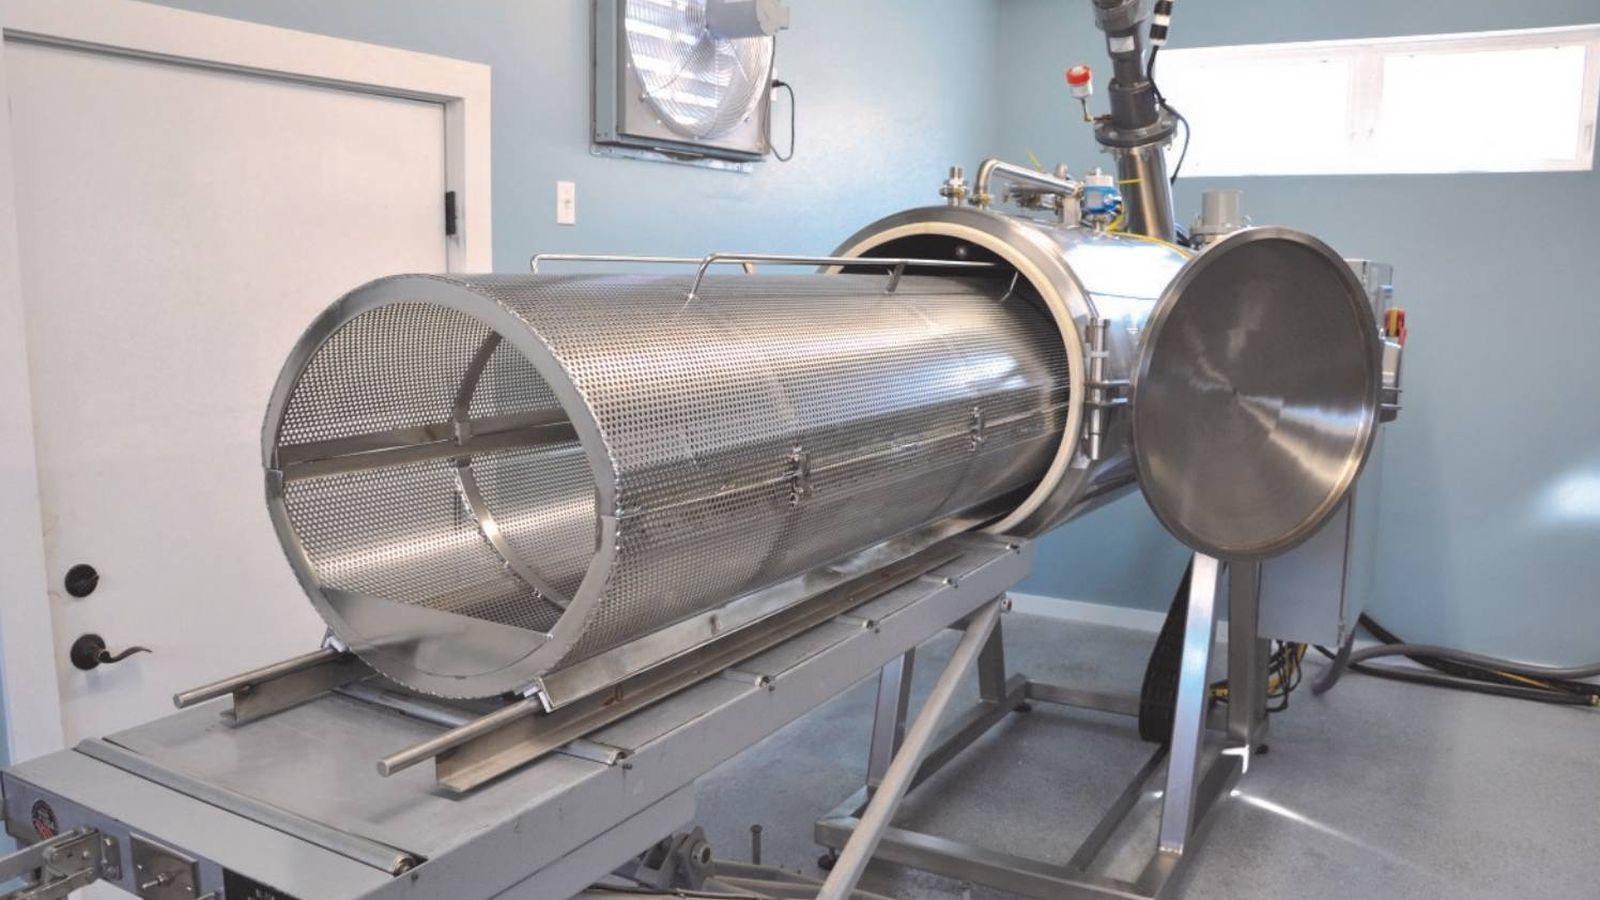 Foto: Imagen de la máquina que se utiliza en la hidrólisis alcalina. (Bio-Response Solutions)